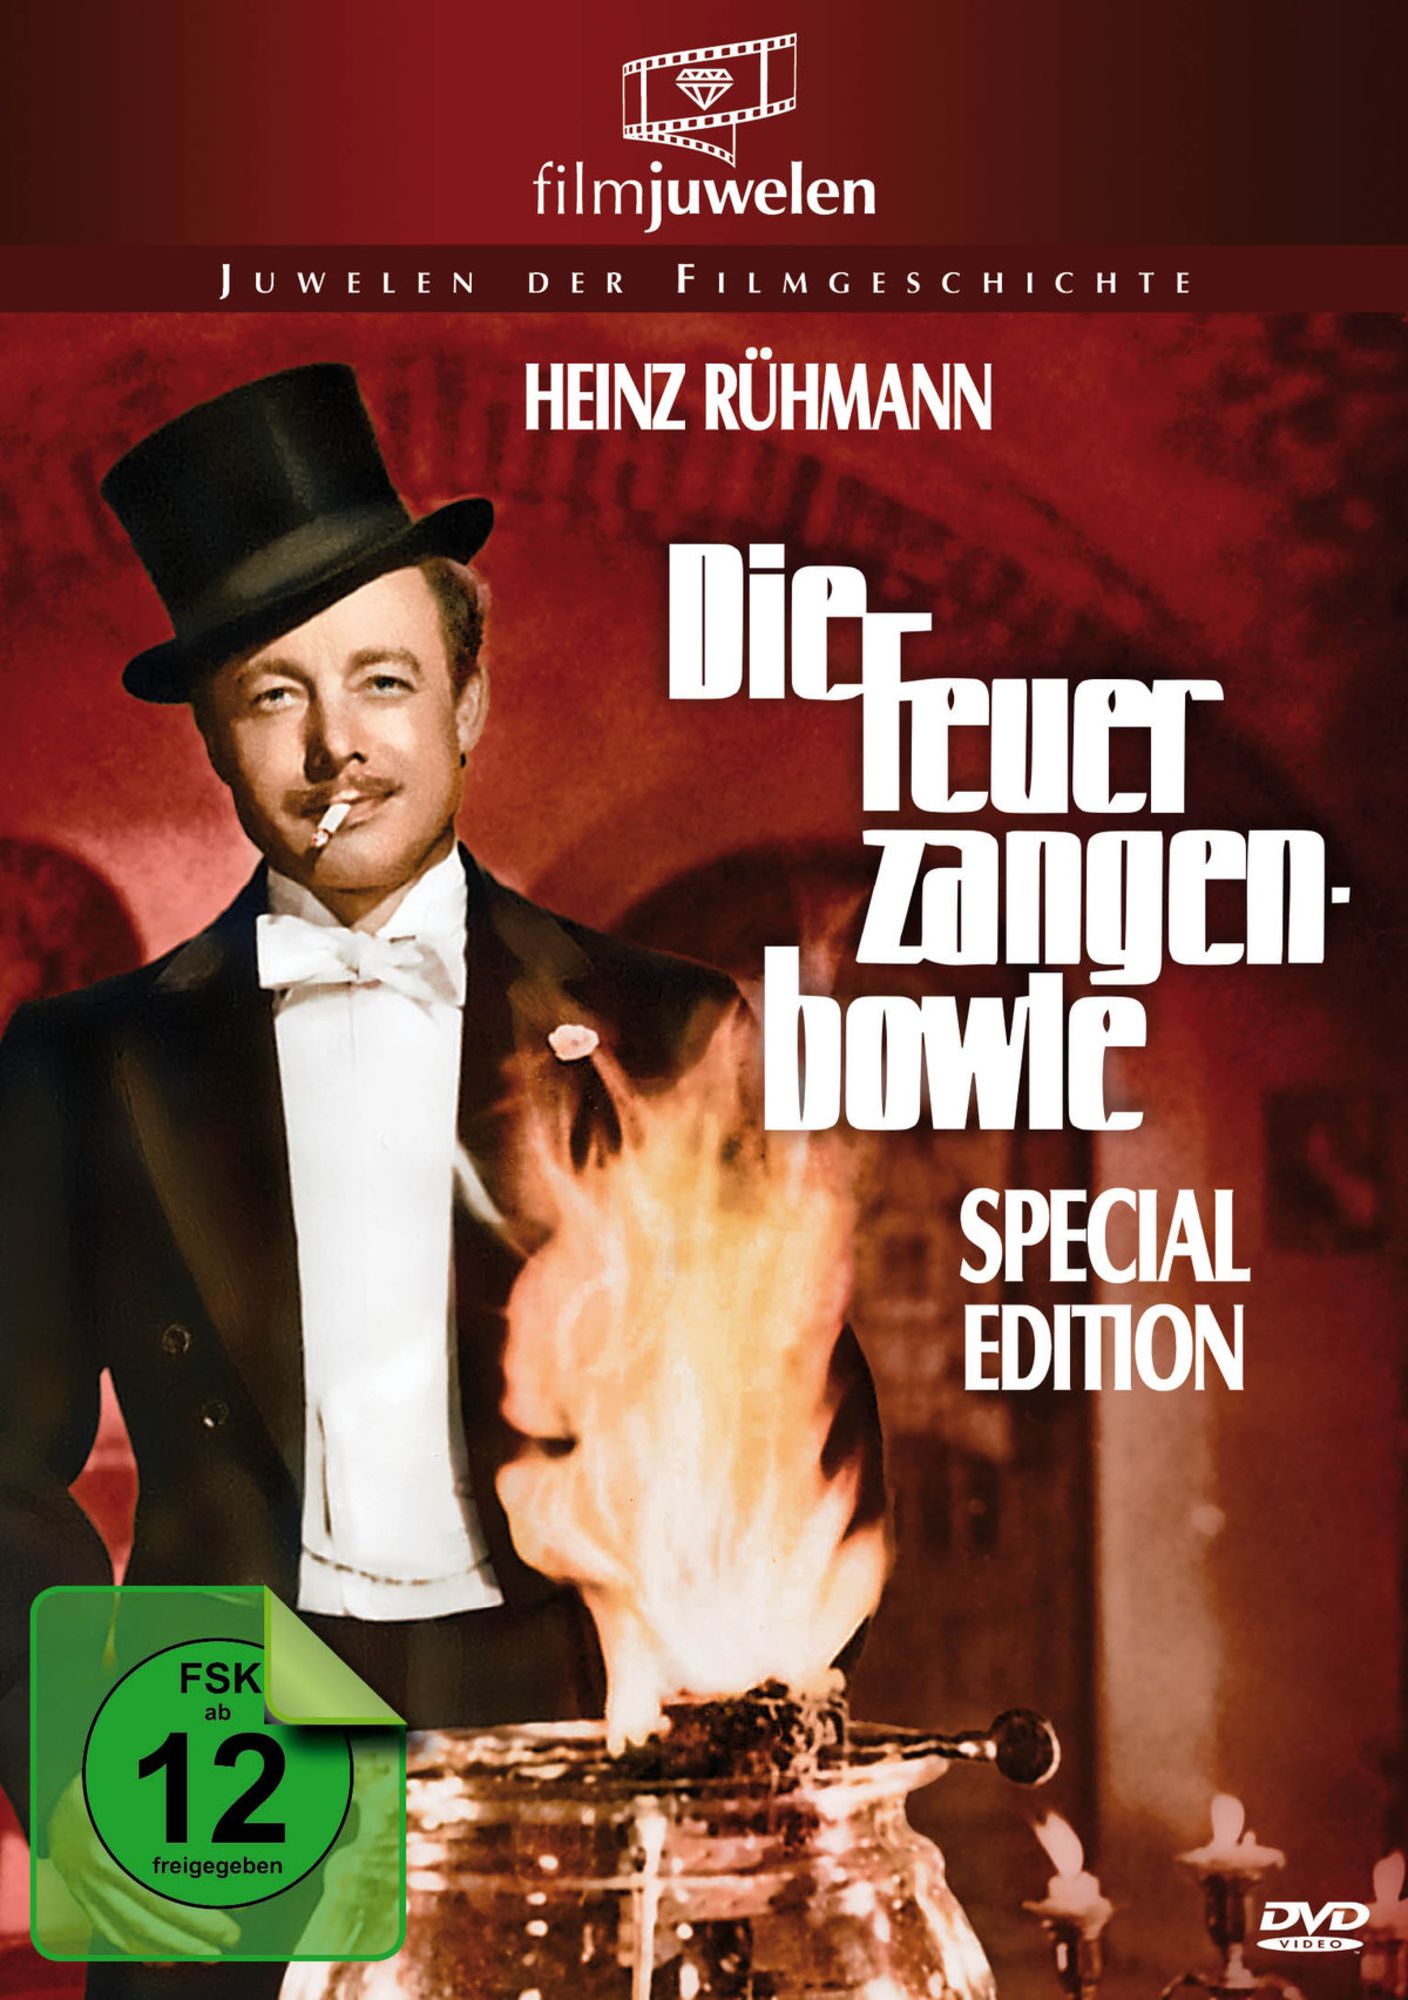 Die Feuerzangenbowle (Heinz Rühmann) (Special Edition) - Filmjuwelen' von  'Helmut Weiss' - 'DVD